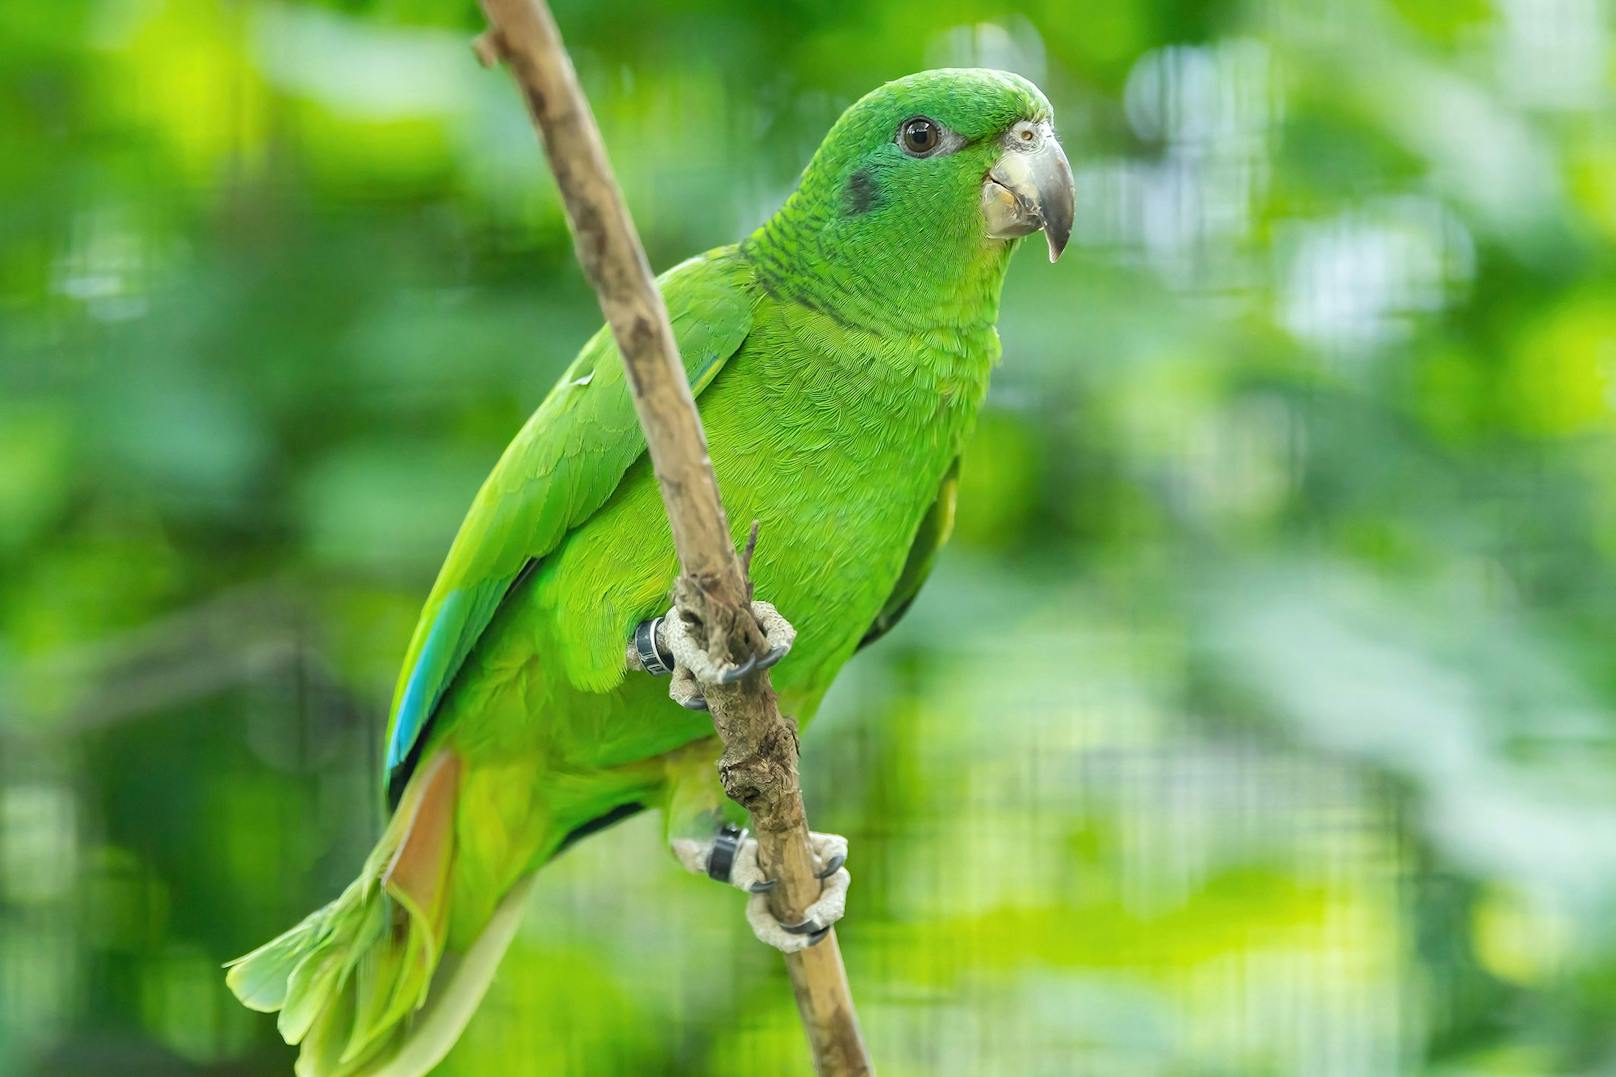 In freier Wildbahn kommen diese quietschgrünen Papageien nun auf der Insel Jamaika vor. 